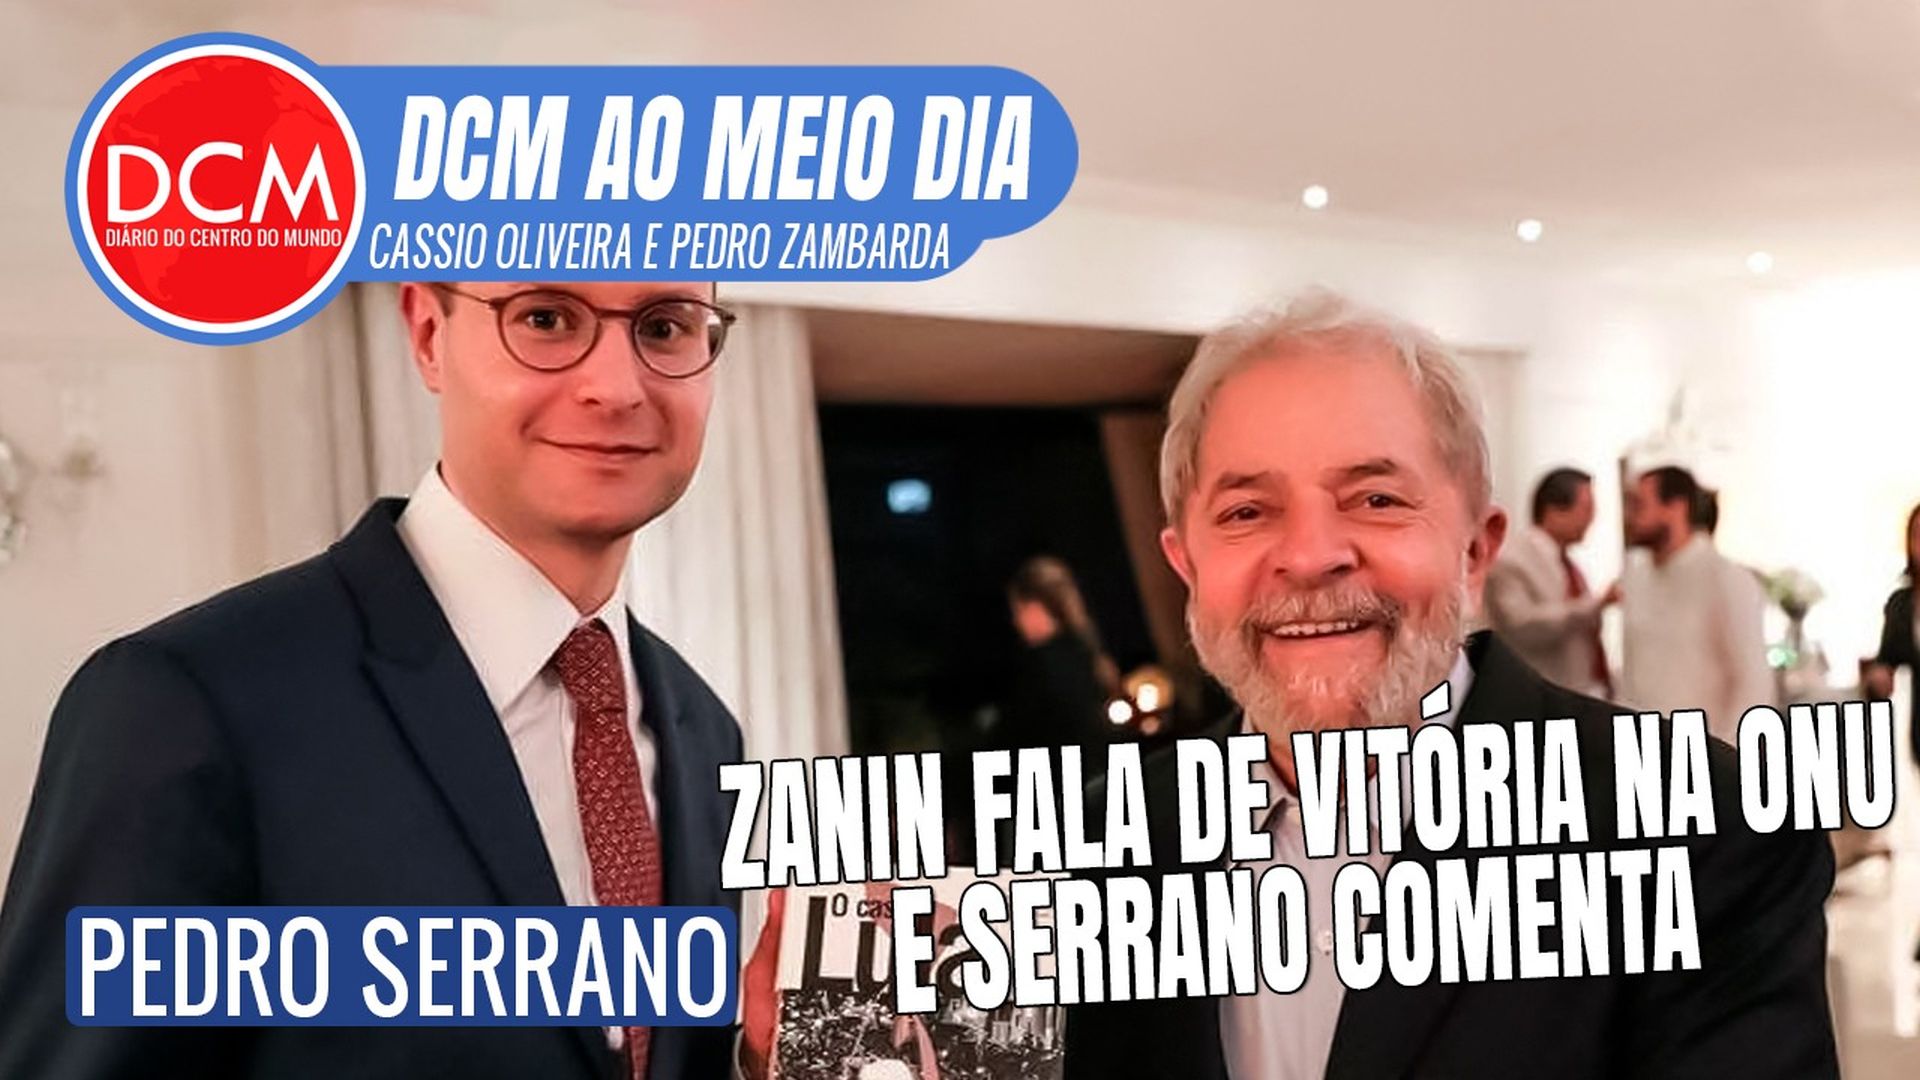 DCM Ao Meio-Dia: ONU quer que governo Bolsonaro divulgue que Moro julgou Lula de forma parcial